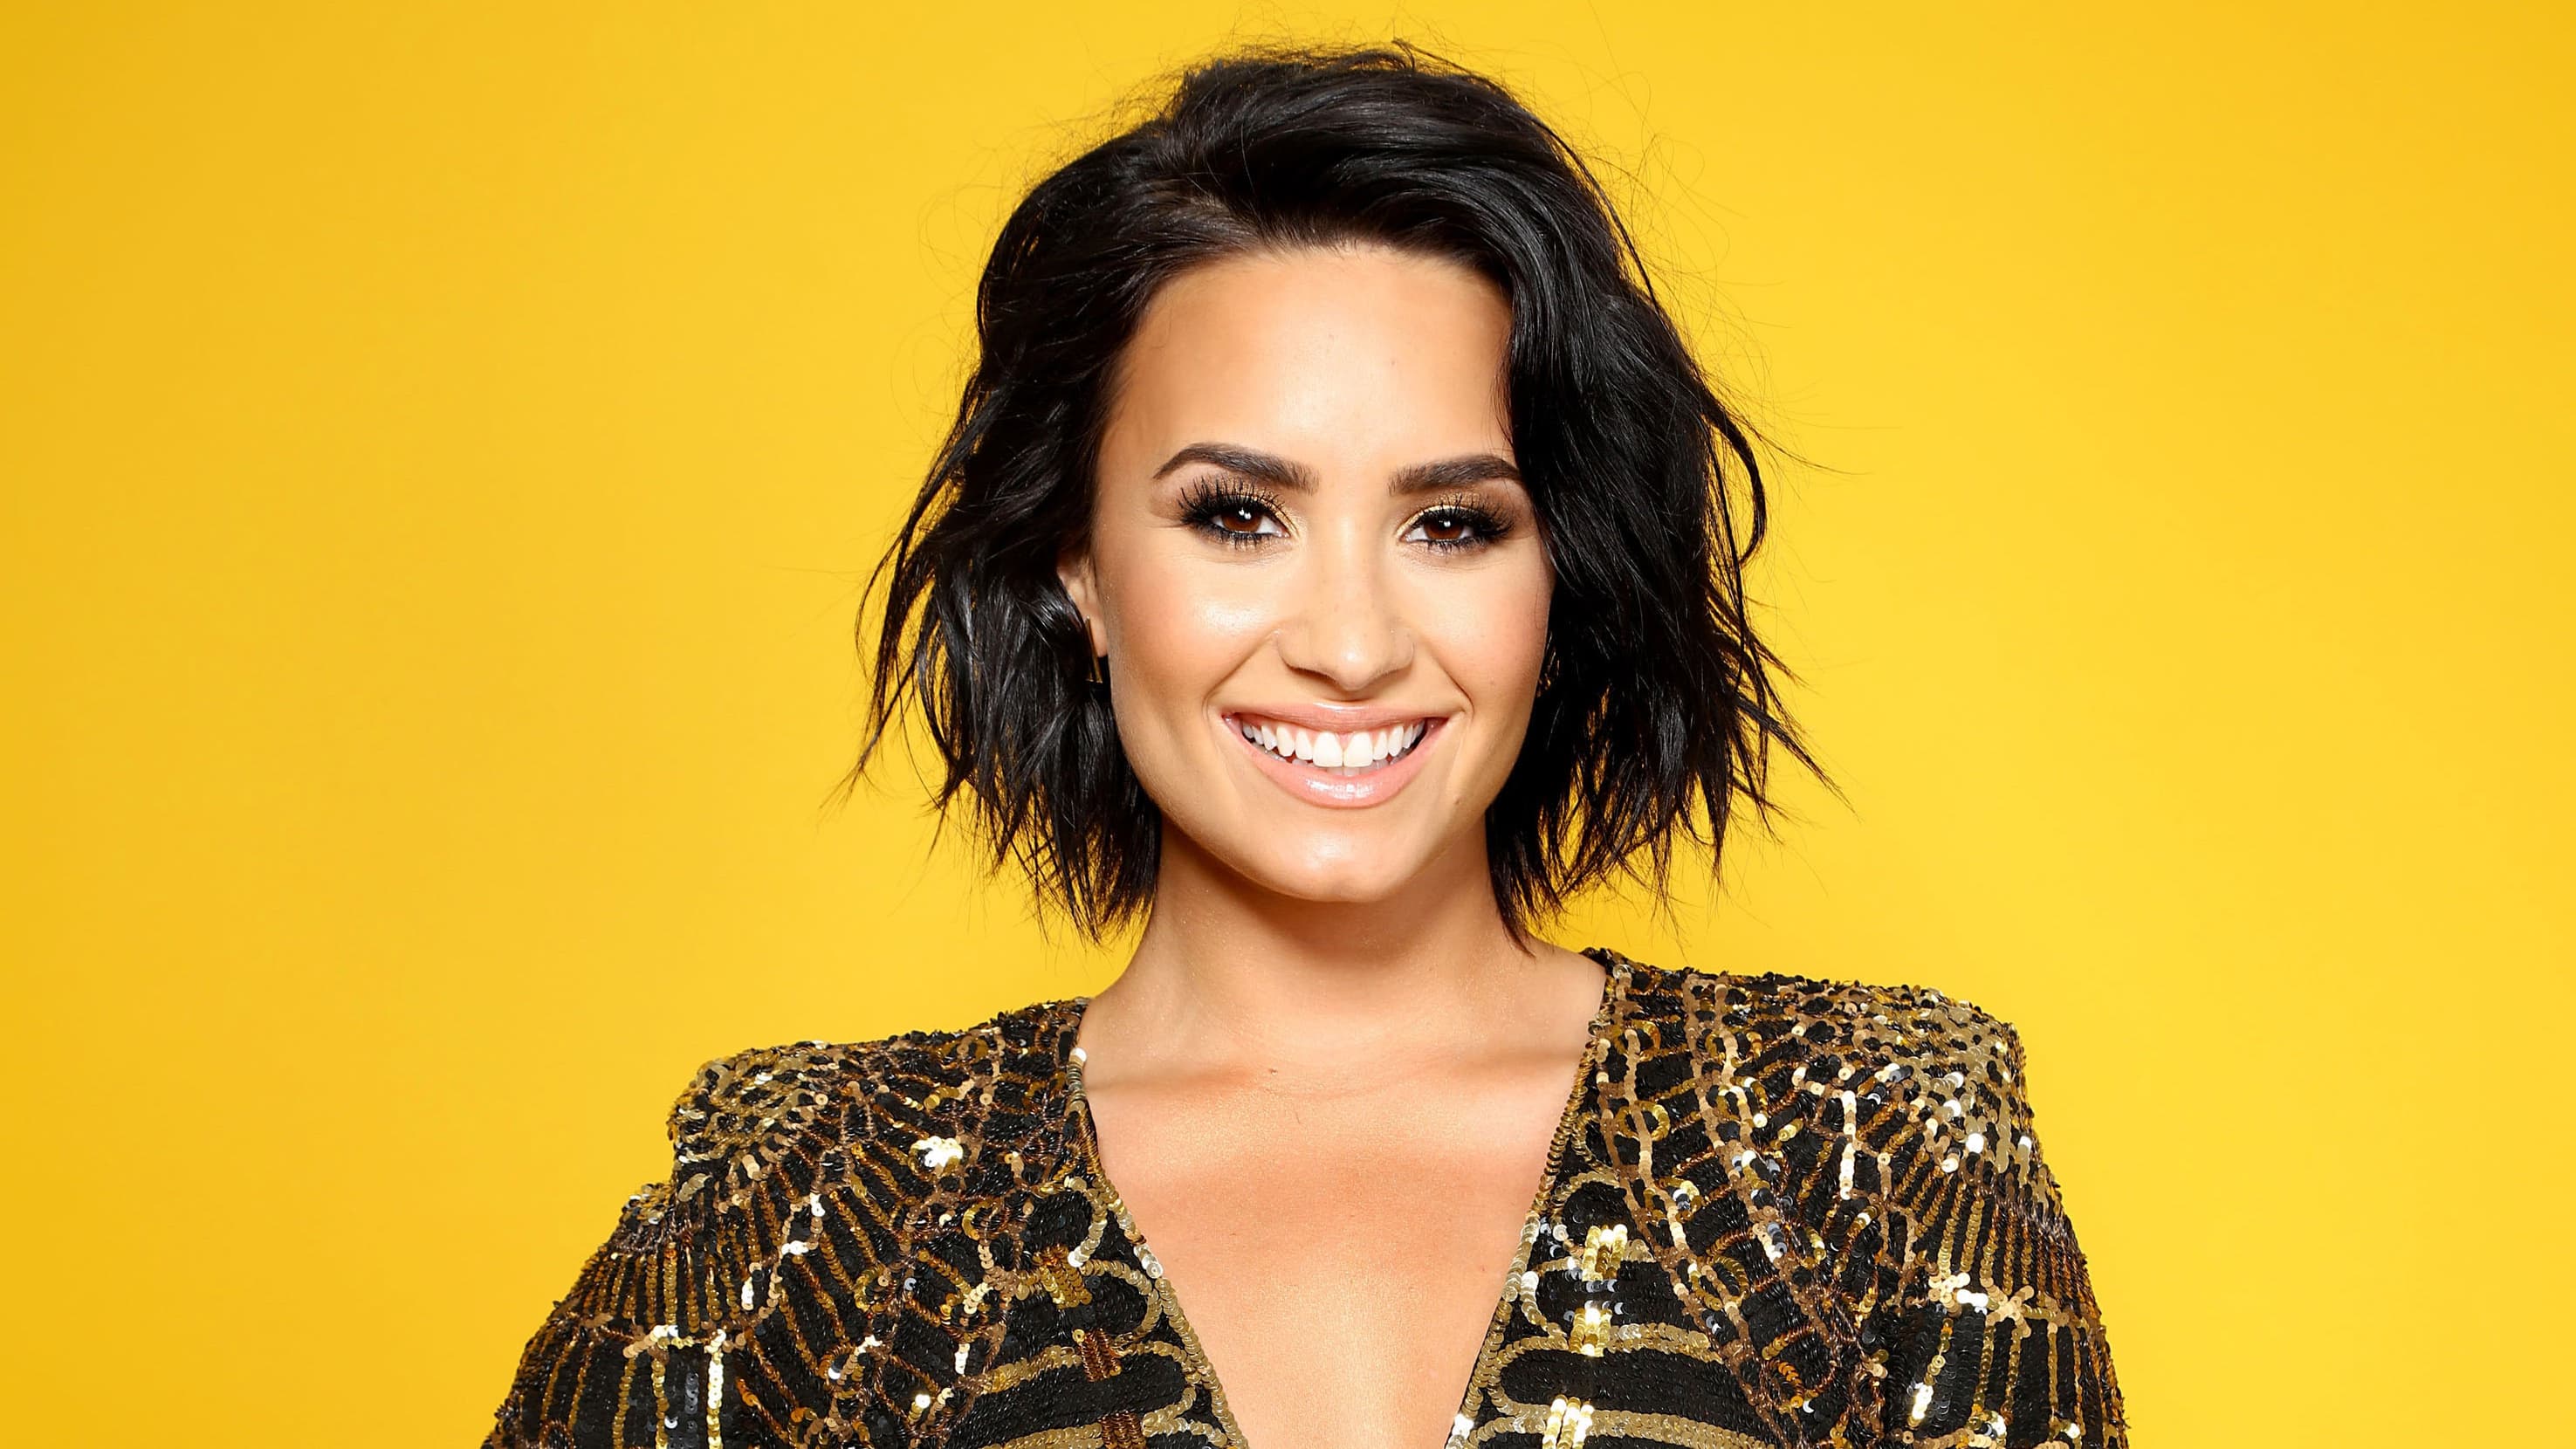 Demi Lovato Smile Wallpaper Background 62198 2951x1660 px